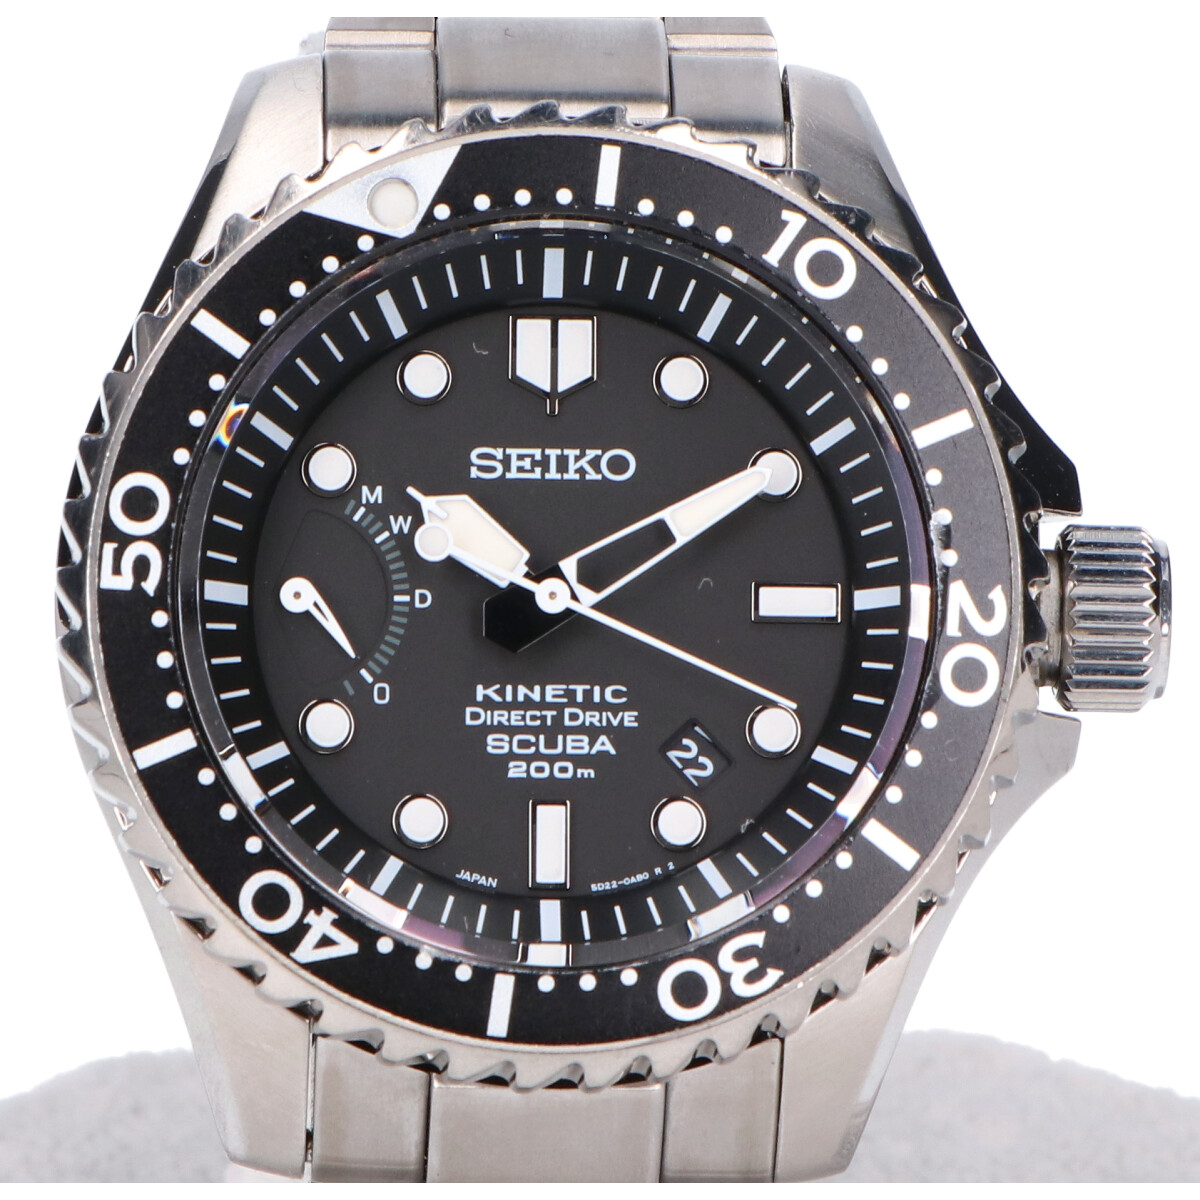 セイコーのSBDD001 プロスペックス マリーンマスター キネティック ダイレクトドライブ 腕時計の買取実績です。